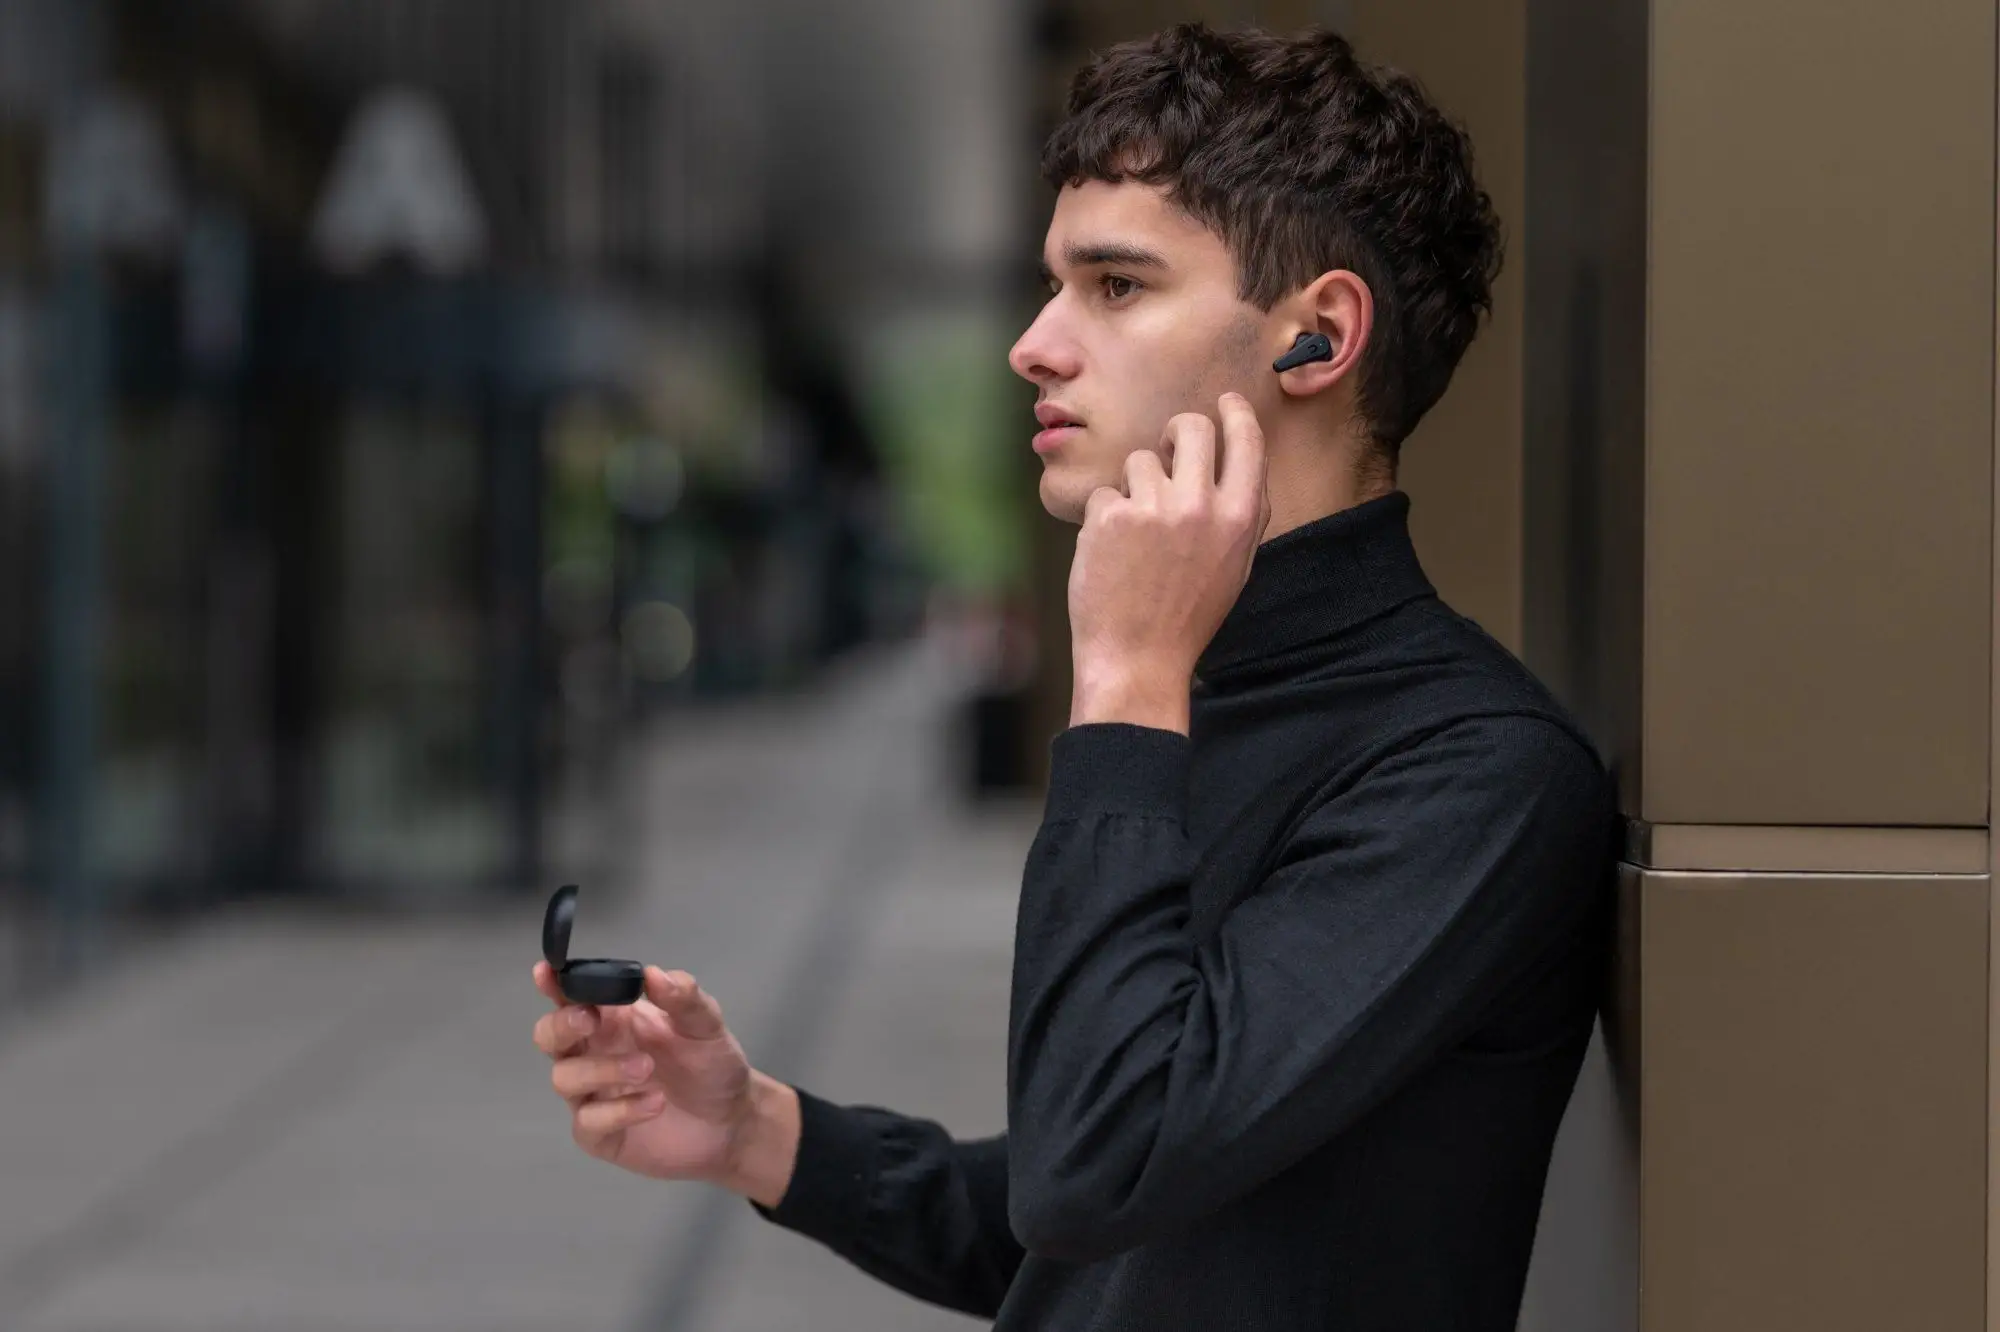 Bezdrátová In-Ear sluchátka Niceboy Pins 3 ANC s podporou Bluetooth 5.1 jsou navržené tak, aby vás nijak neomezovaly při pohybu či při jiných aktivitách.